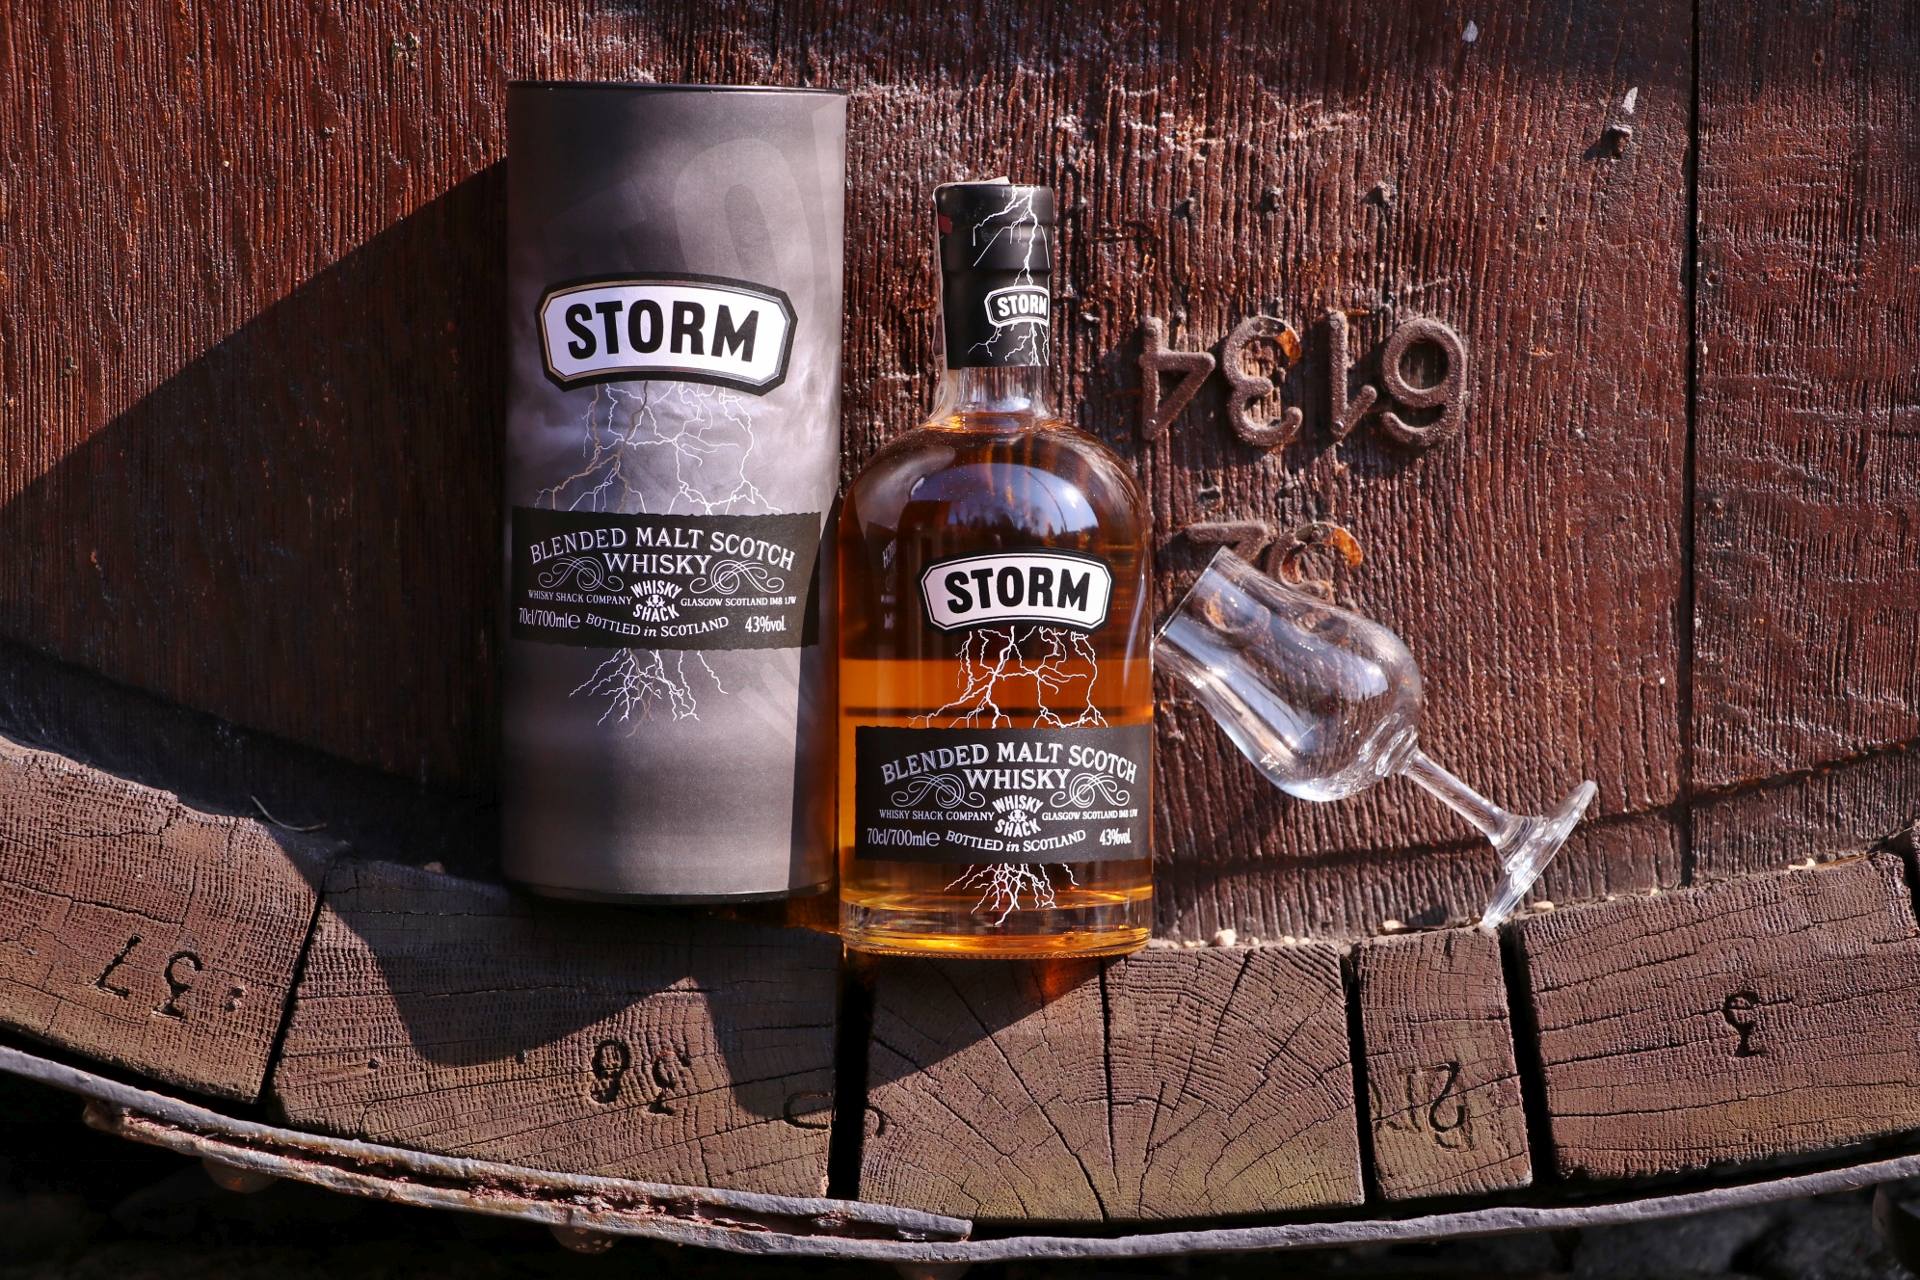 Storm Blended Malt Scotch Whisky